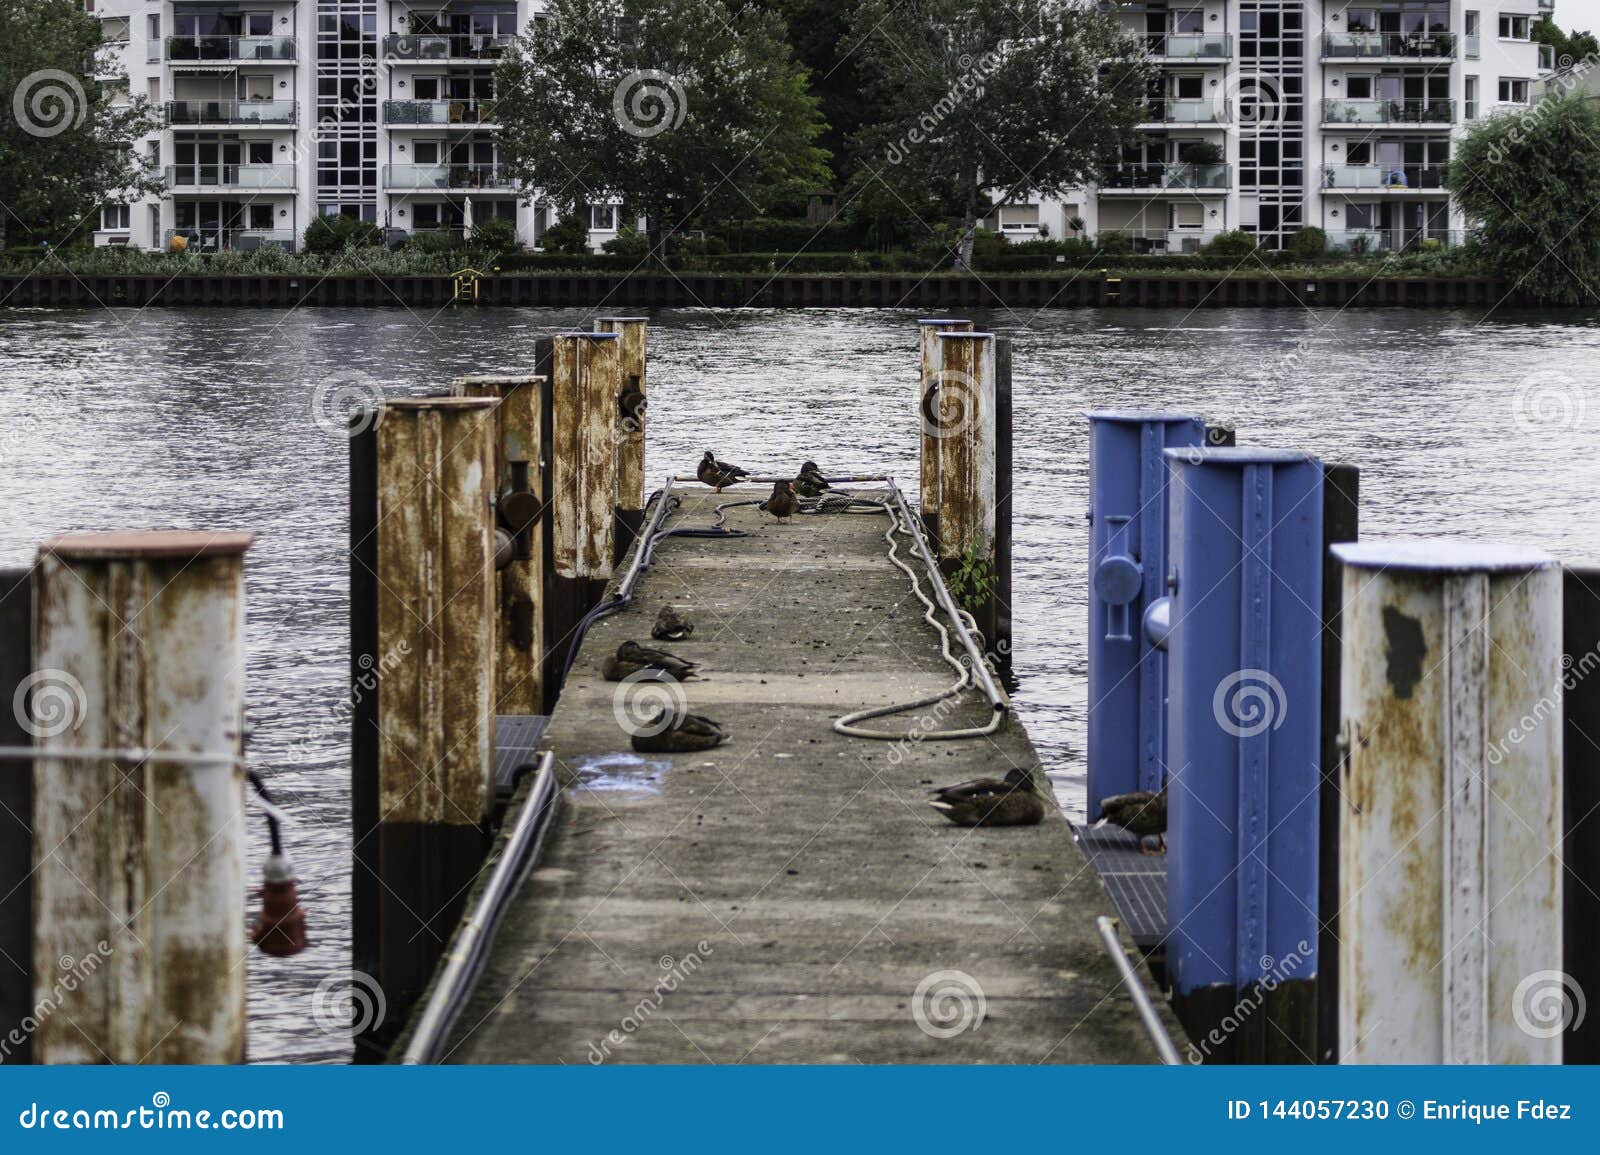 ducks on the dock, berlin, germany